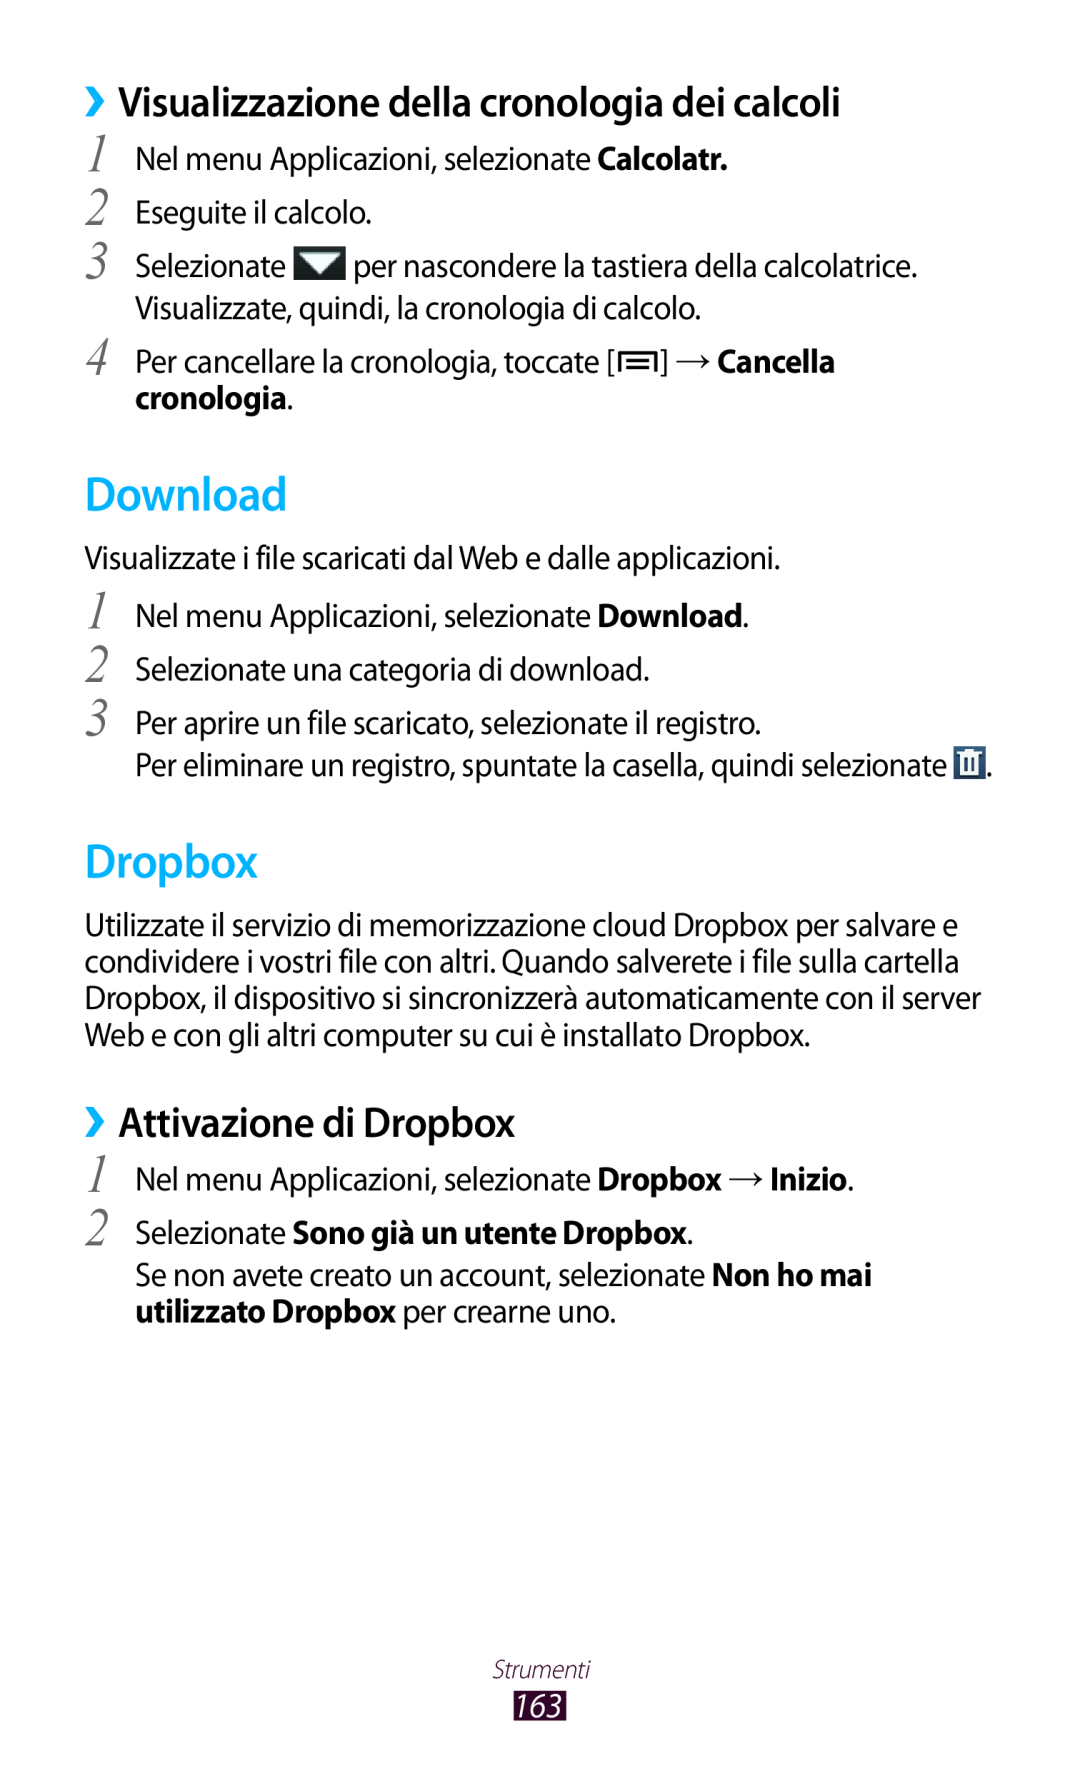 Samsung GT-N7000RWATIM manual Download, ››Visualizzazione della cronologia dei calcoli, ››Attivazione di Dropbox 